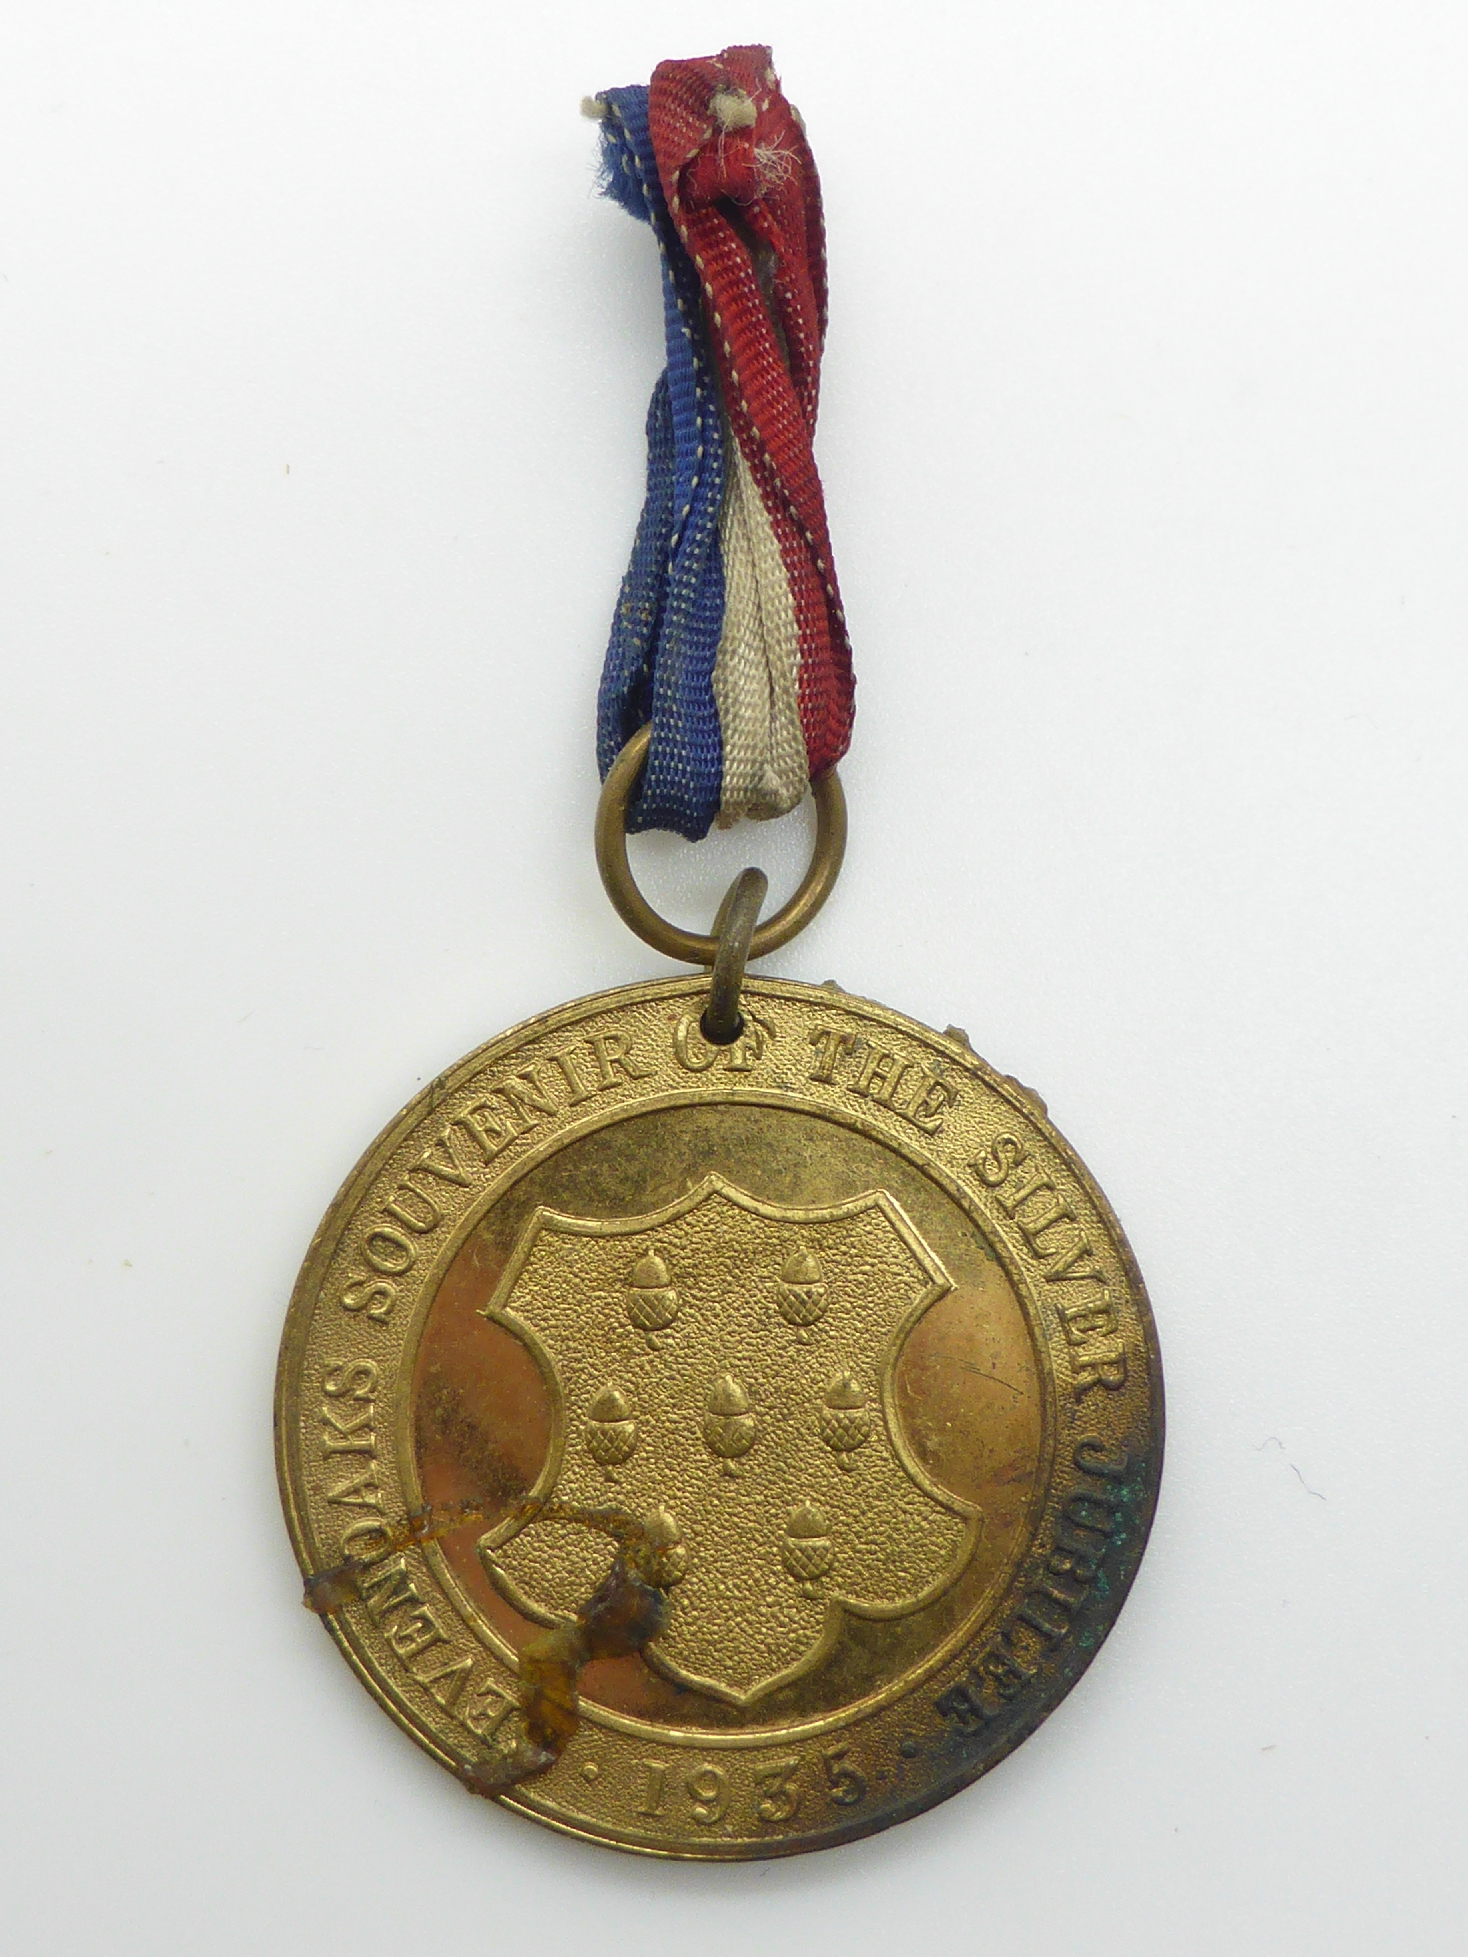 Elizabeth II Imperial Service Medal named to Mrs Jean Margaret Rose together with a WWII War Medal - Image 12 of 47